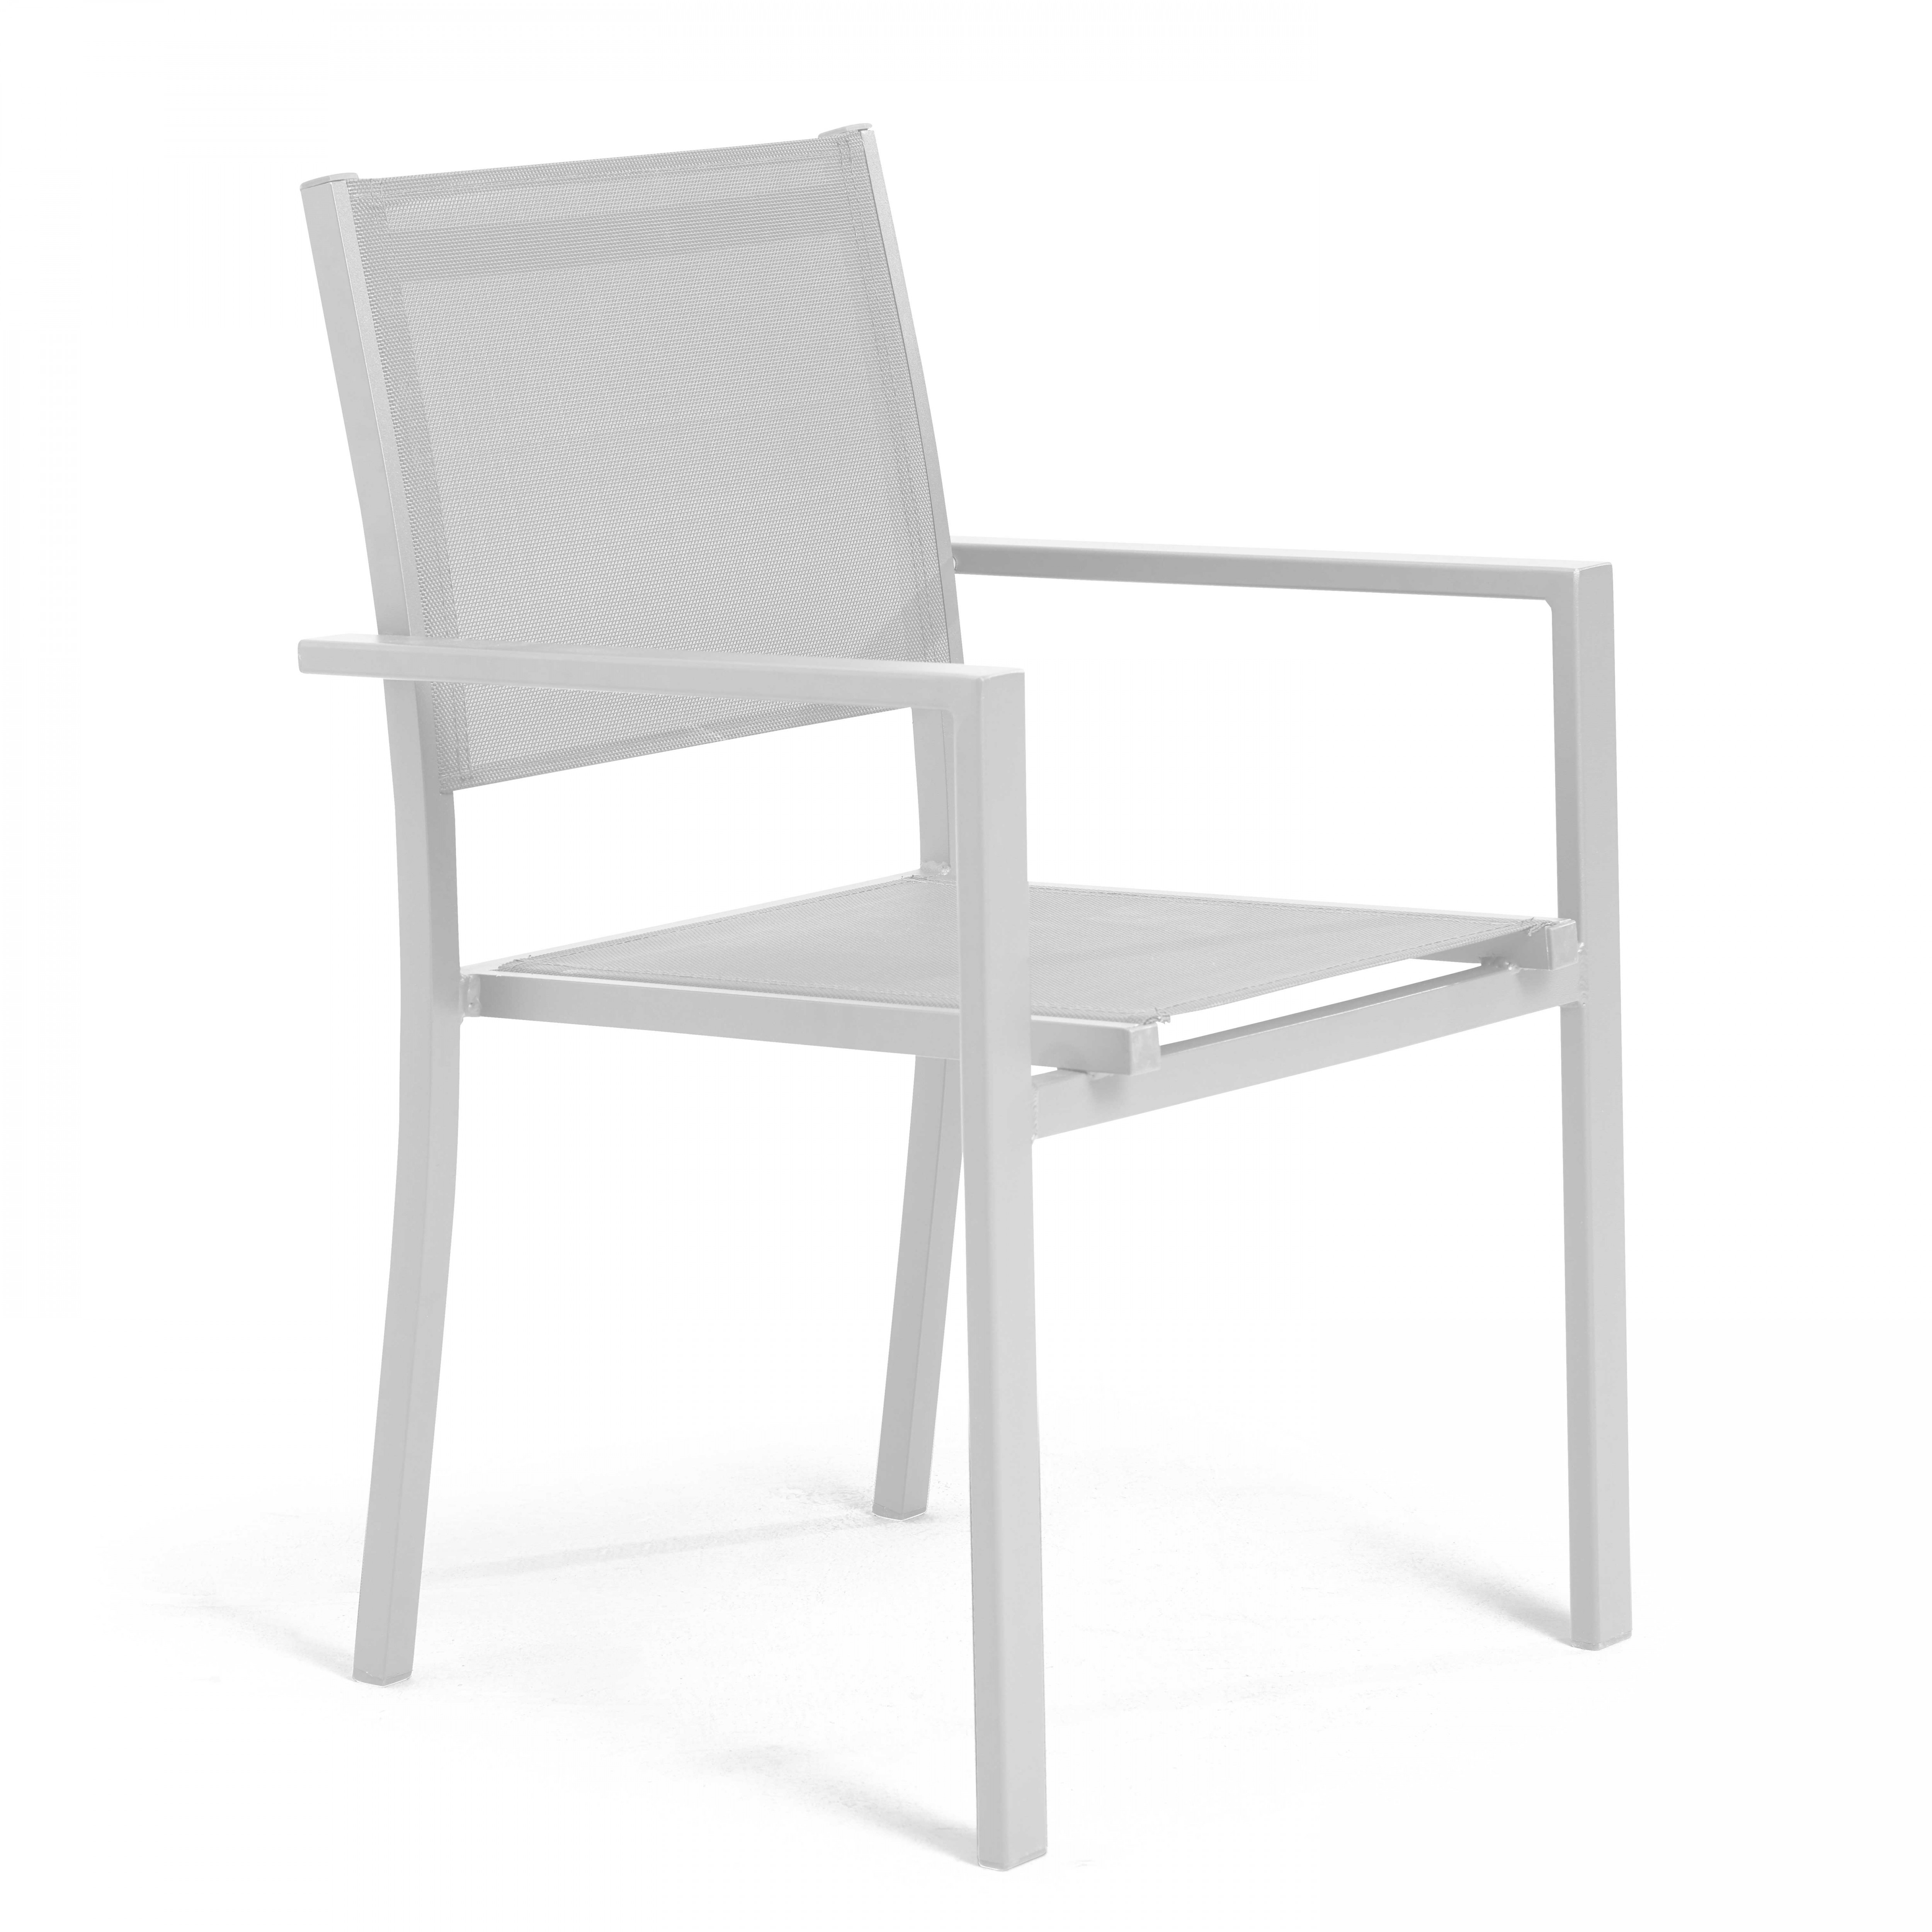 Chaise de jardin avec accoudoirs en aluminium et textilène